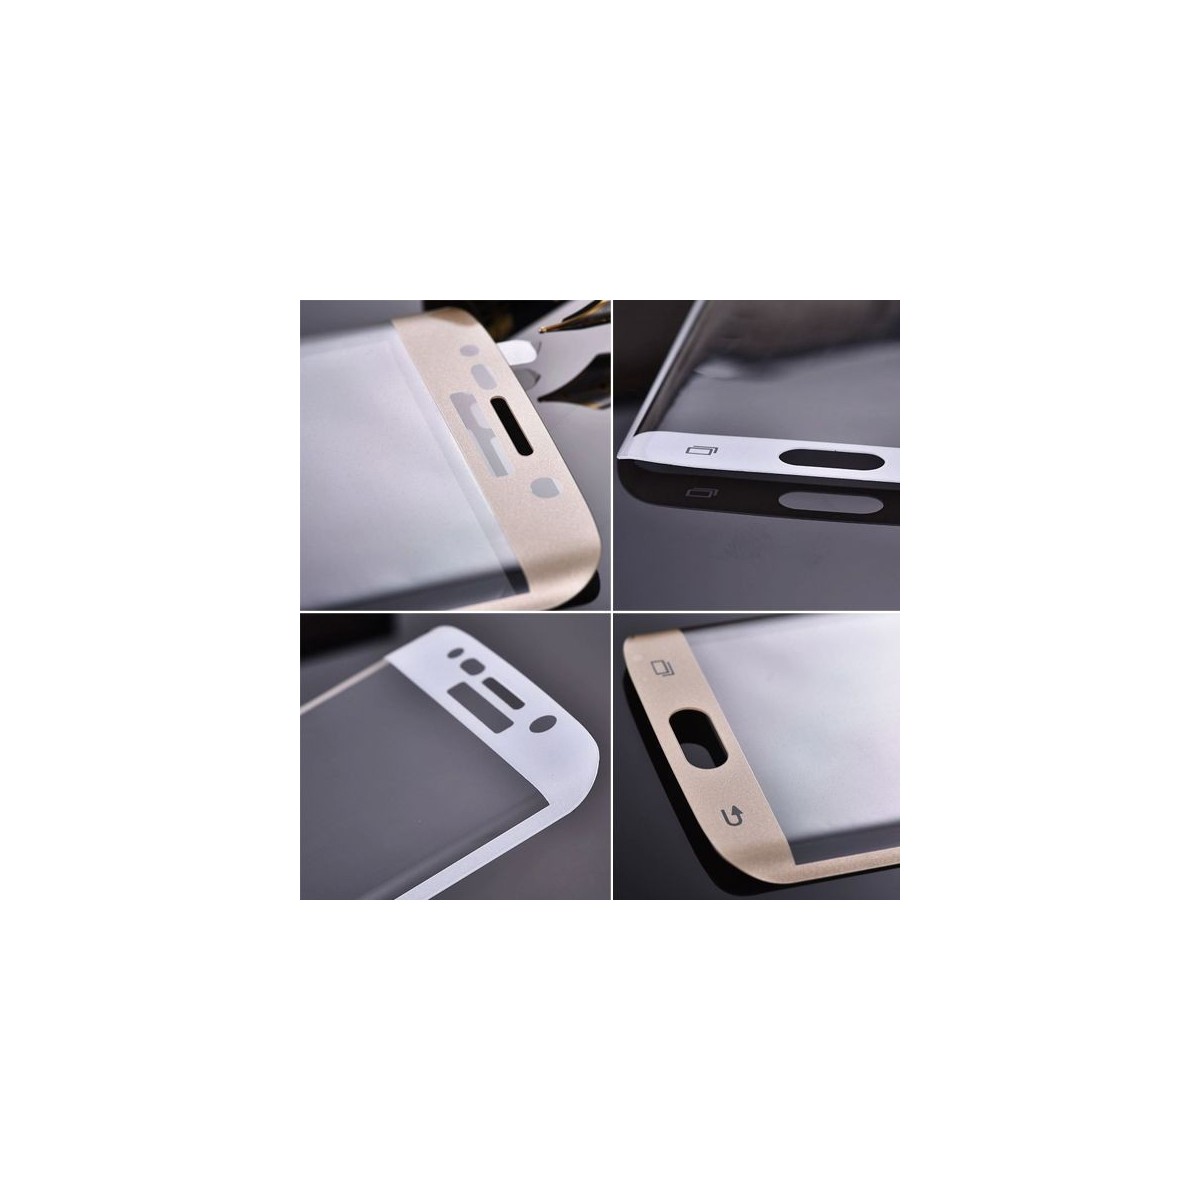 Film Galaxy S6 Edge Plus protection écran verre trempé incurvé contour Doré